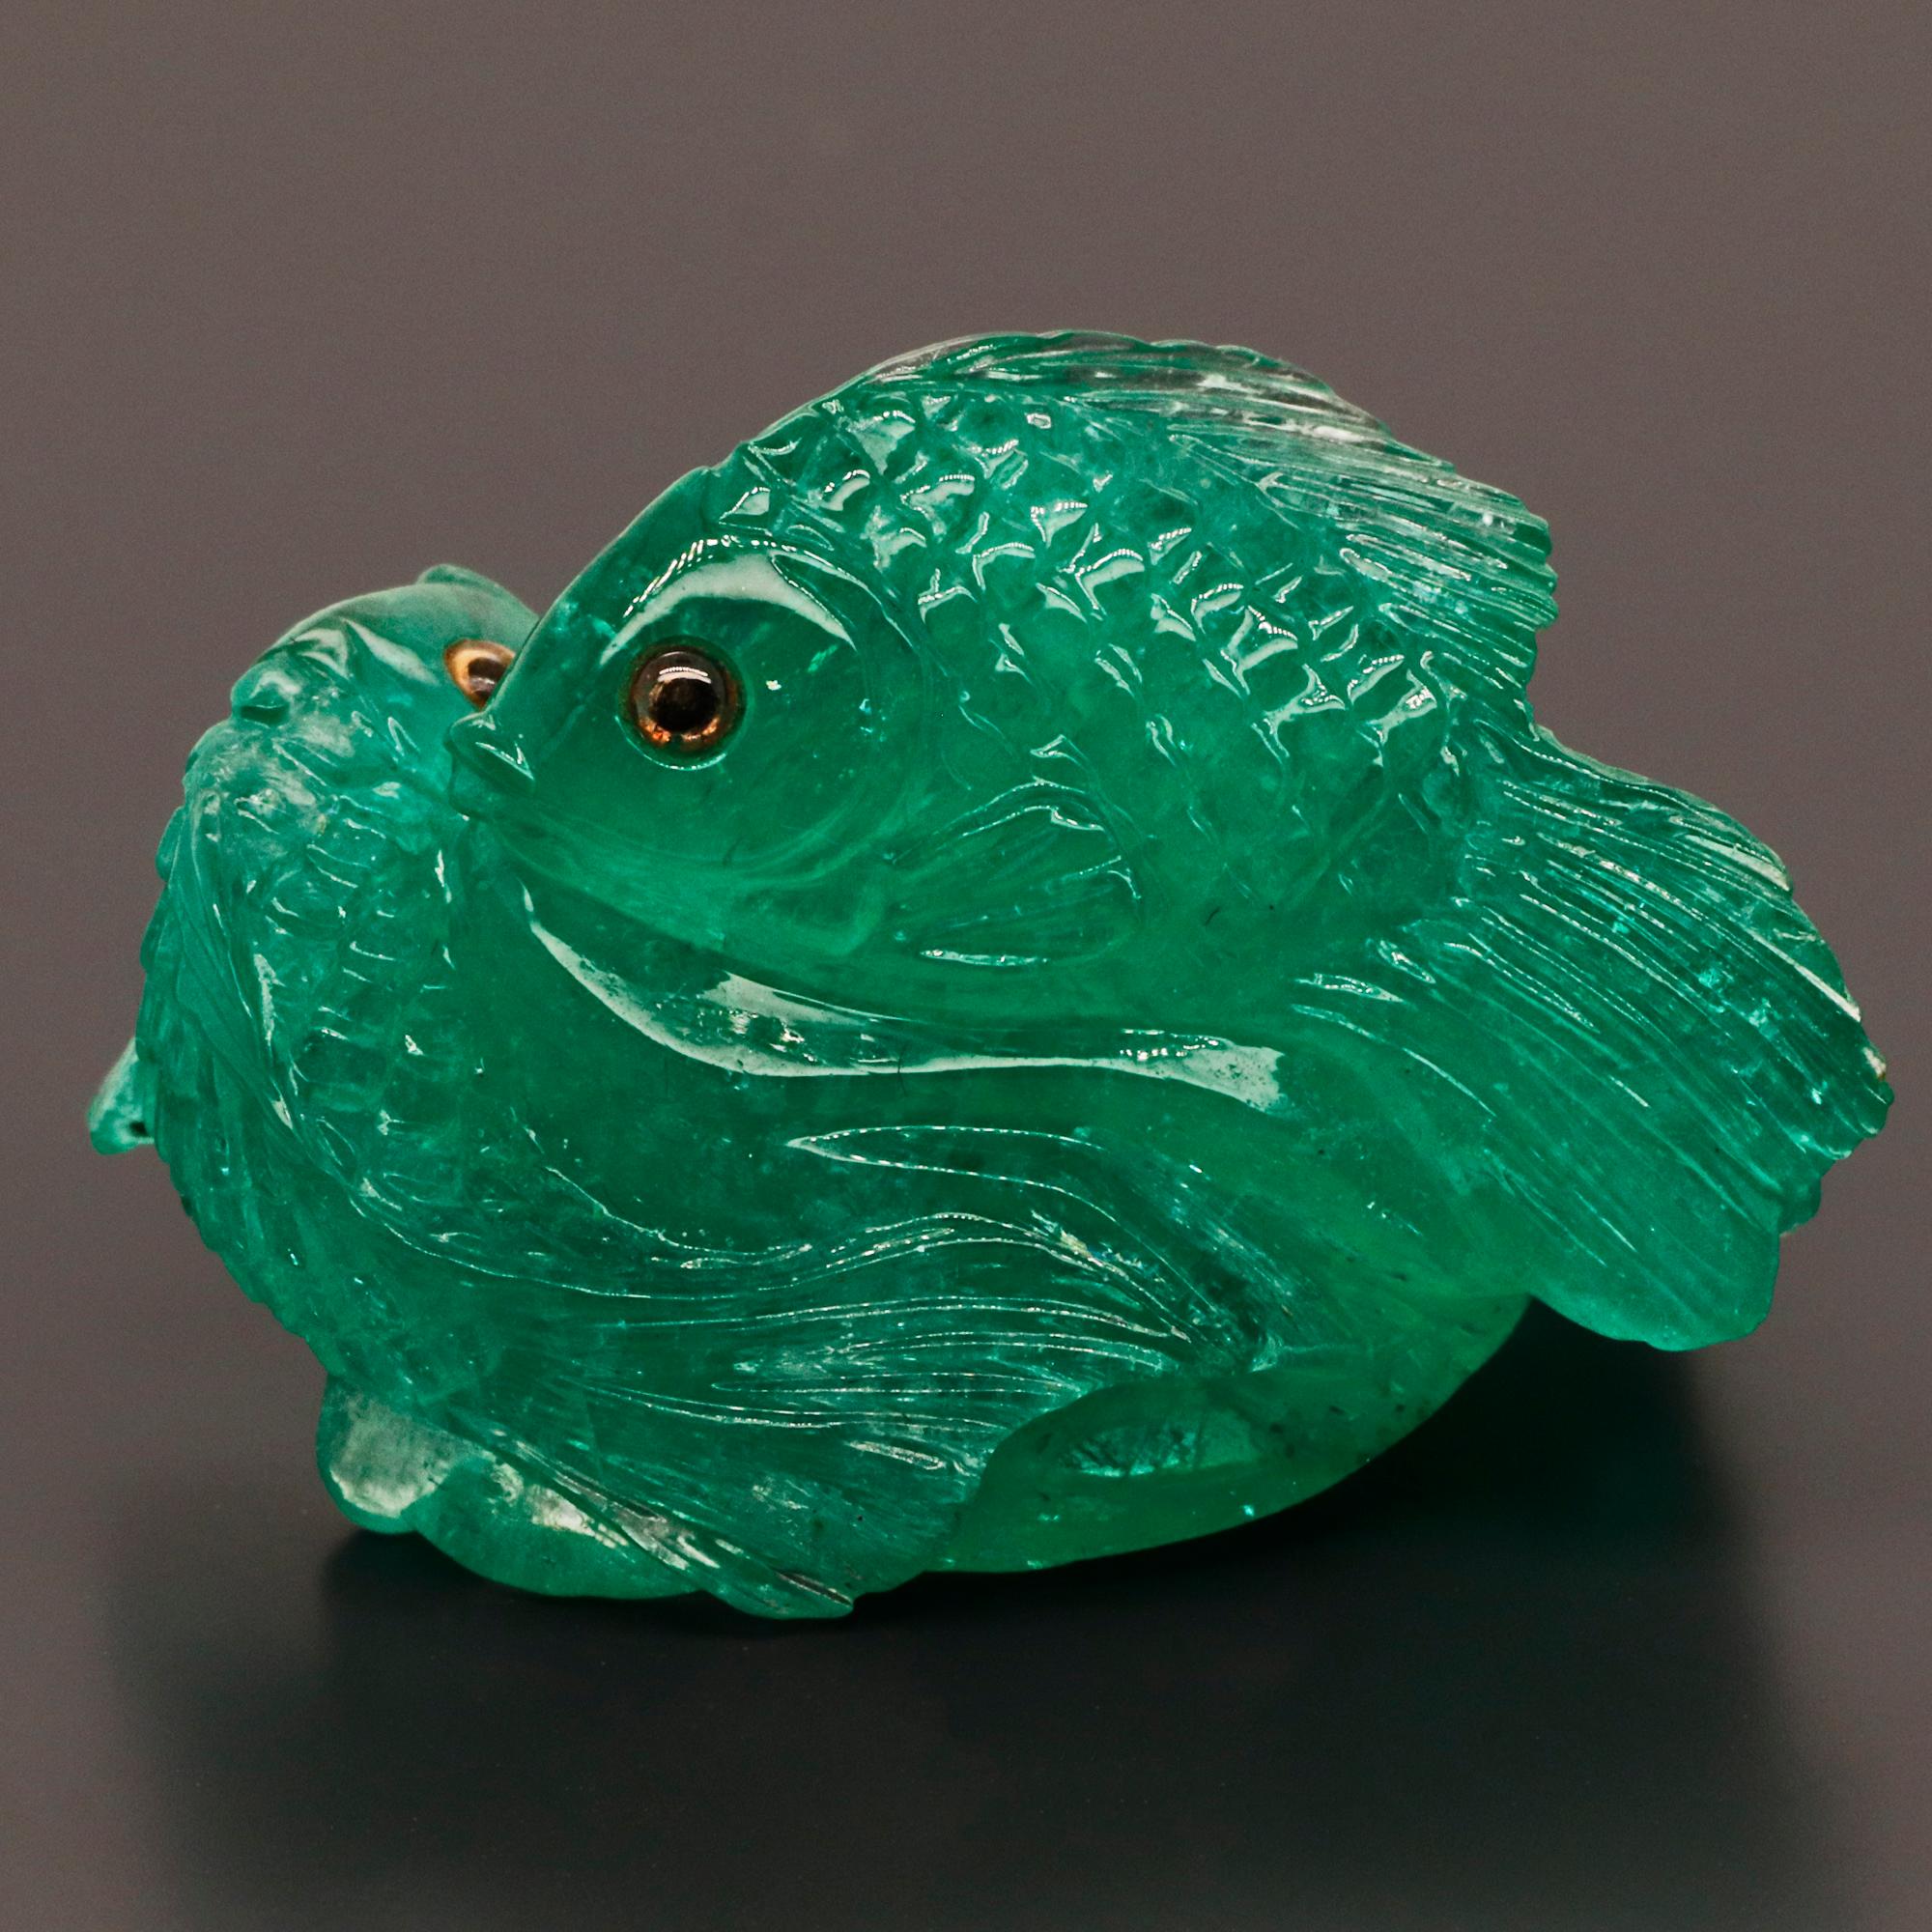 Eine Synergie zwischen Edelstein und Kunst in einem subtilen Stück - Emerald Fish Carving.

Im modernen spirituellen Glauben und in der modernen spirituellen Praxis symbolisieren Fische eine Reihe von Dingen, von denen einige mit älteren